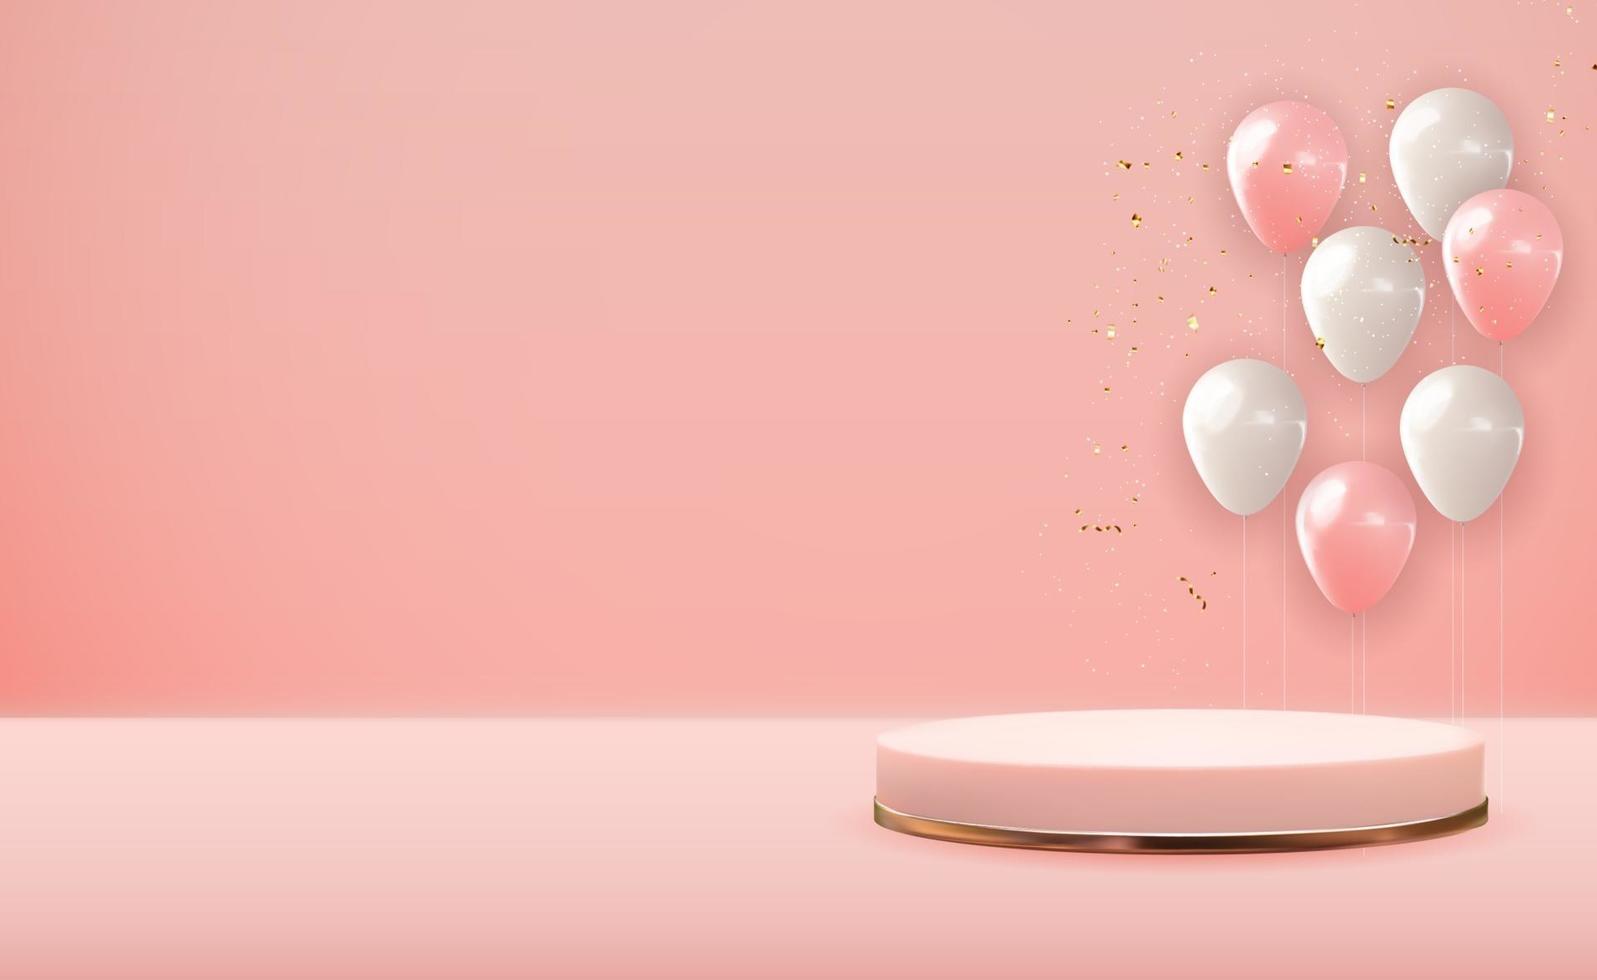 realistische 3d rose gouden voetstuk over roze pastel natuurlijke achtergrond met feestballonnen. trendy lege podiumvertoning voor cosmetische productpresentatie, modetijdschrift. kopie ruimte vectorillustratie eps10 vector